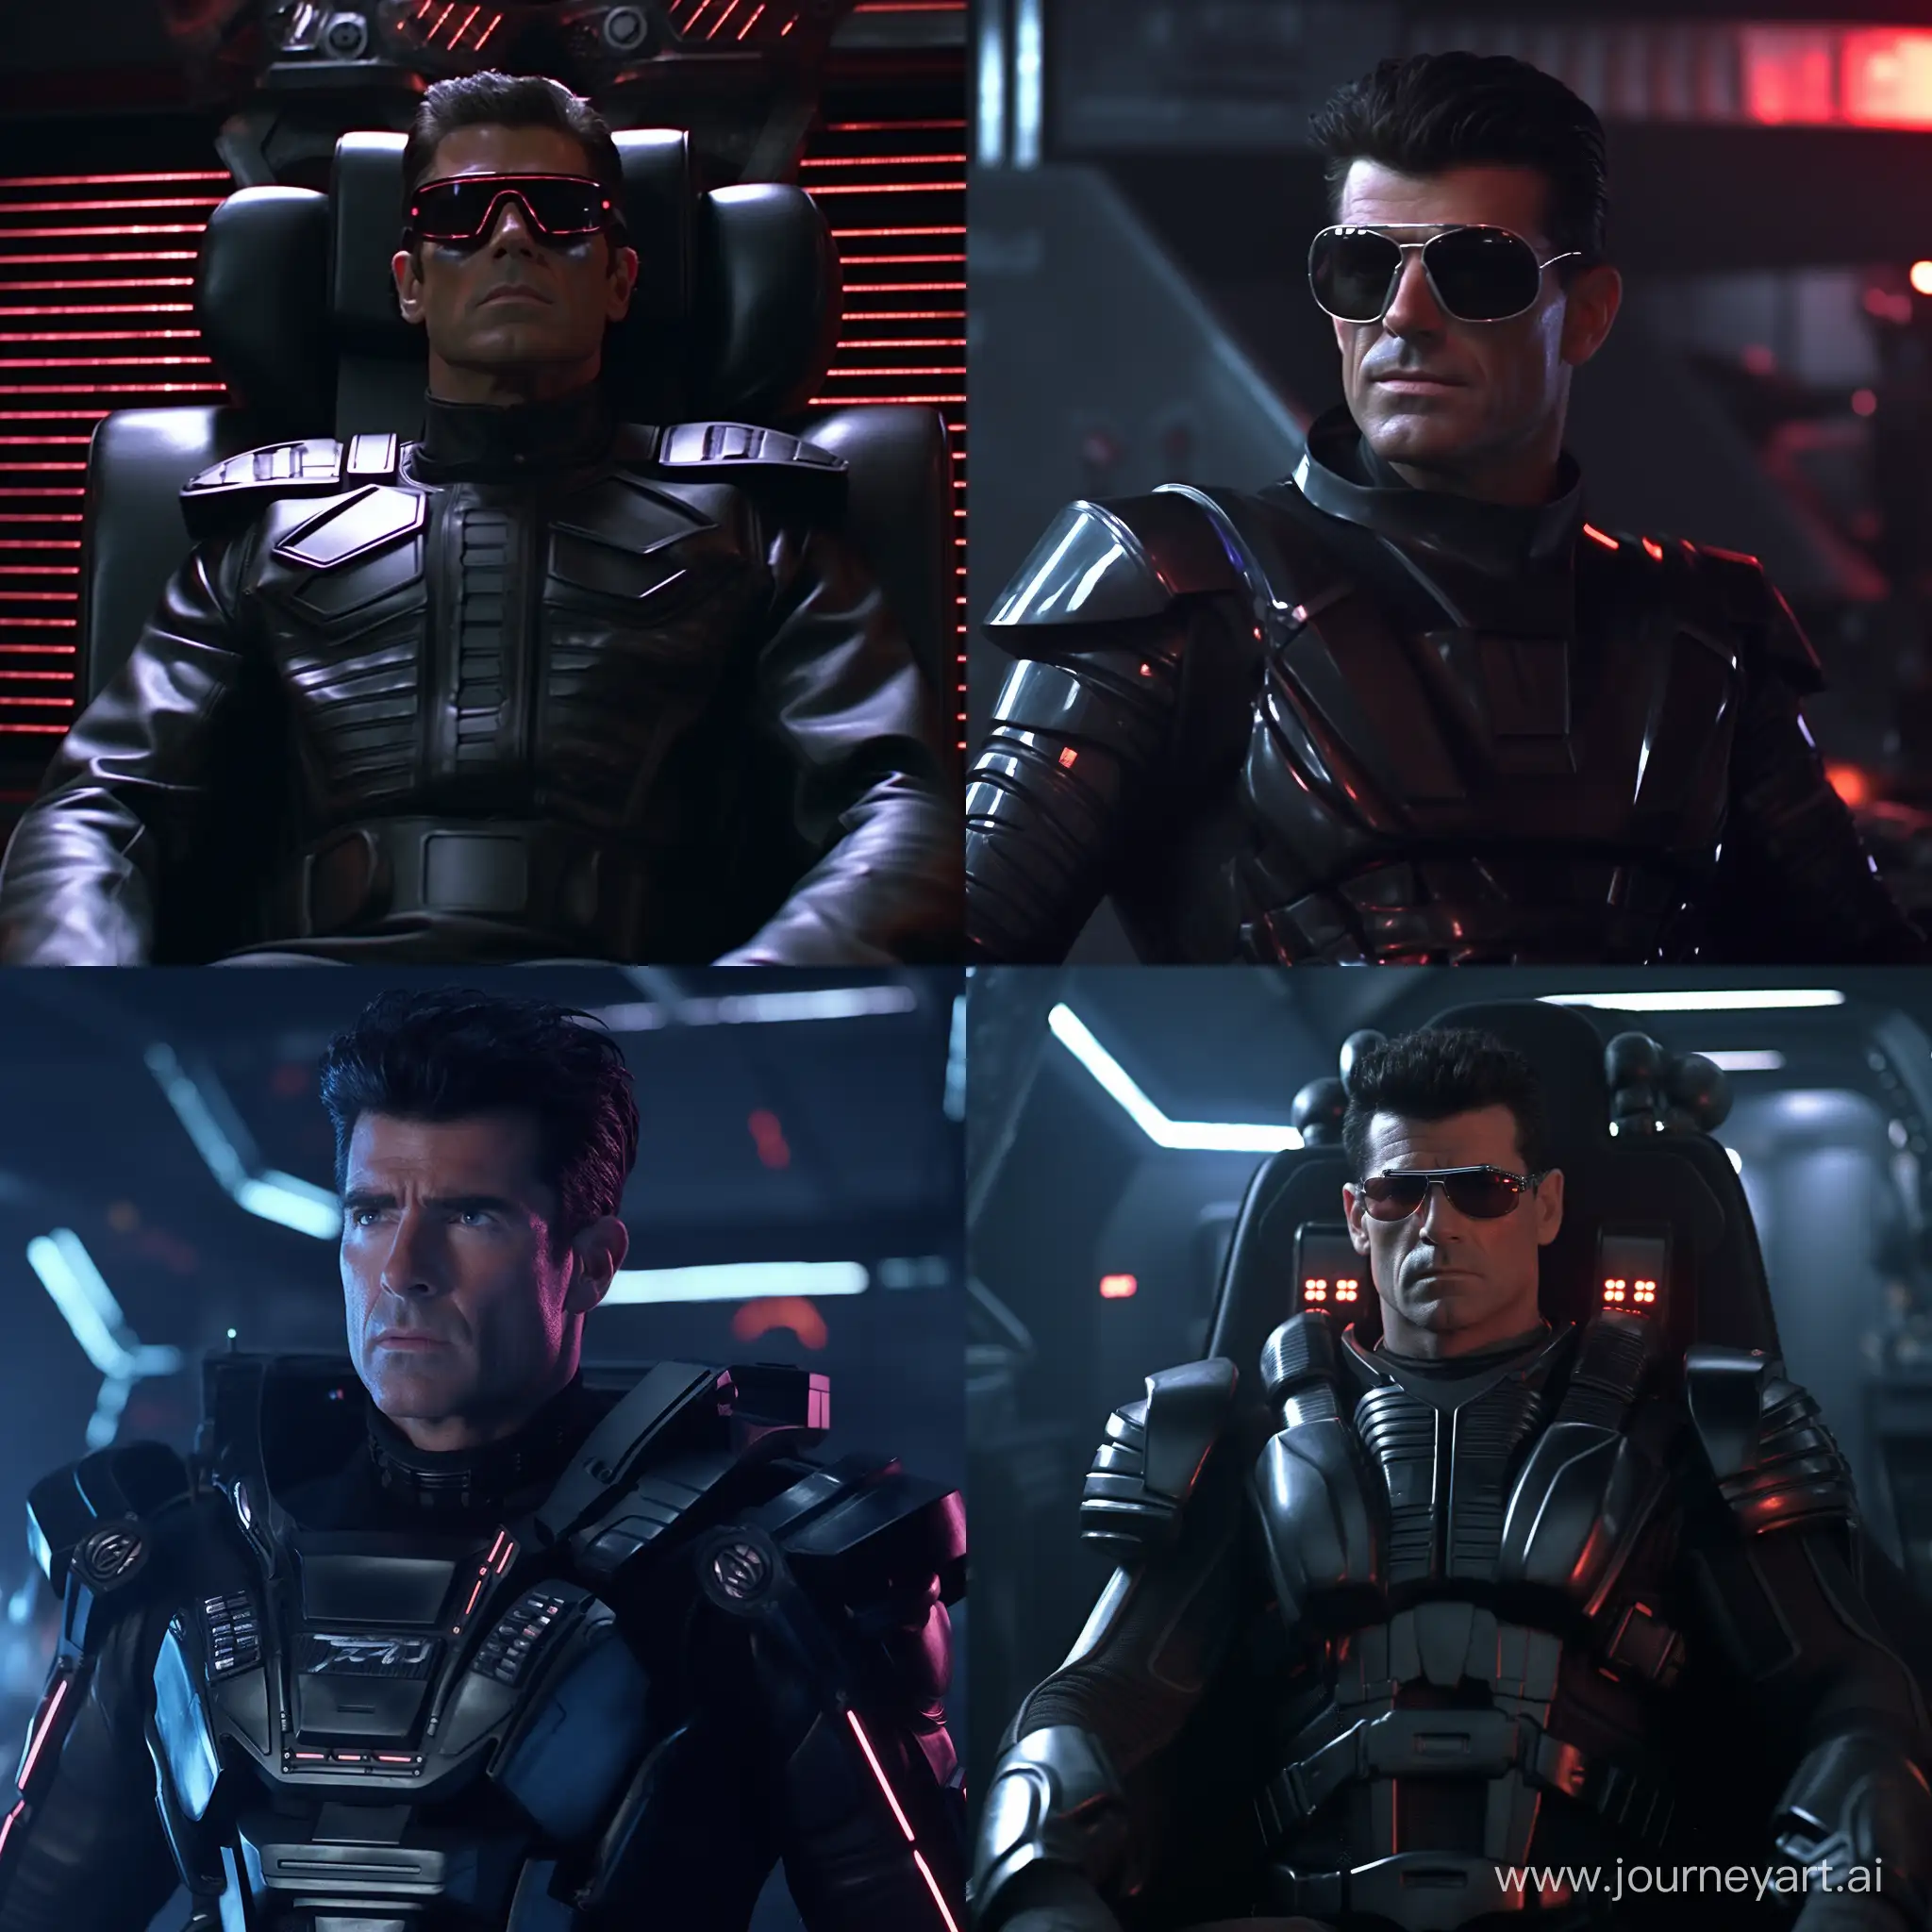 Simon-Cowell-Cyberpunk-80s-SciFi-Transformation